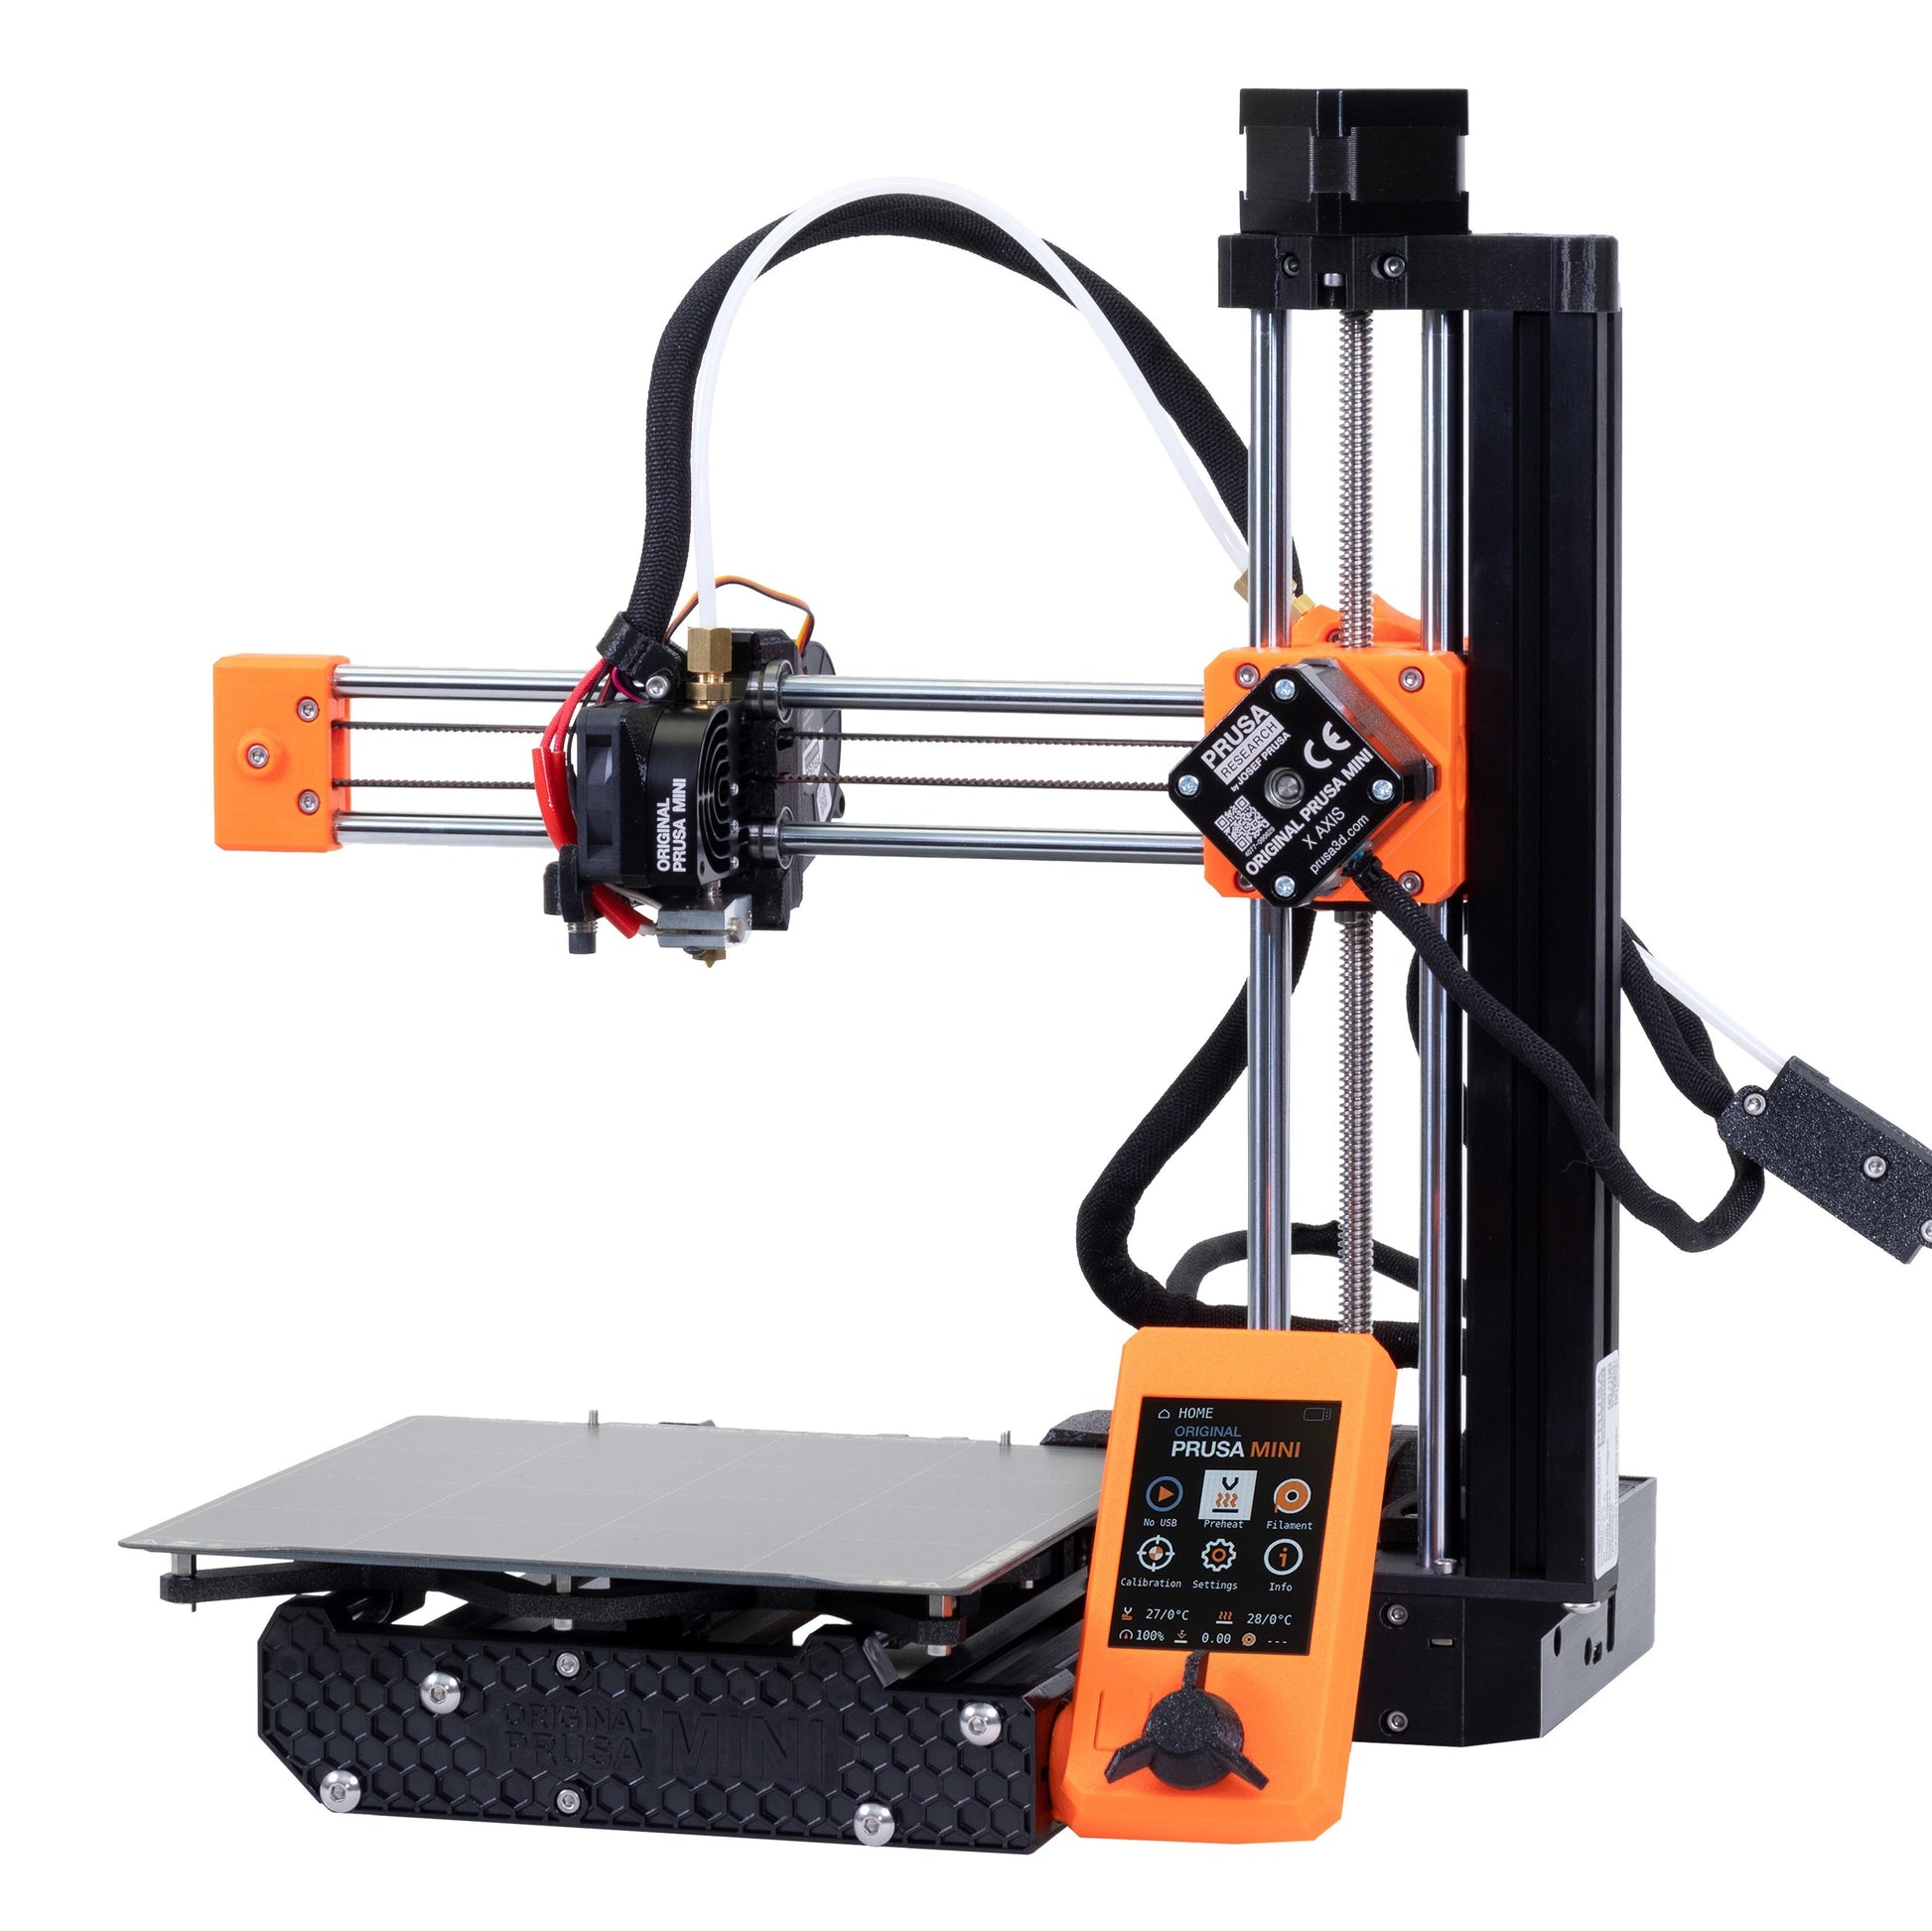 Modregning Anmelder Følge efter Original Prusa MINI+ 3D Printer With Filament Sensor – Printed Solid